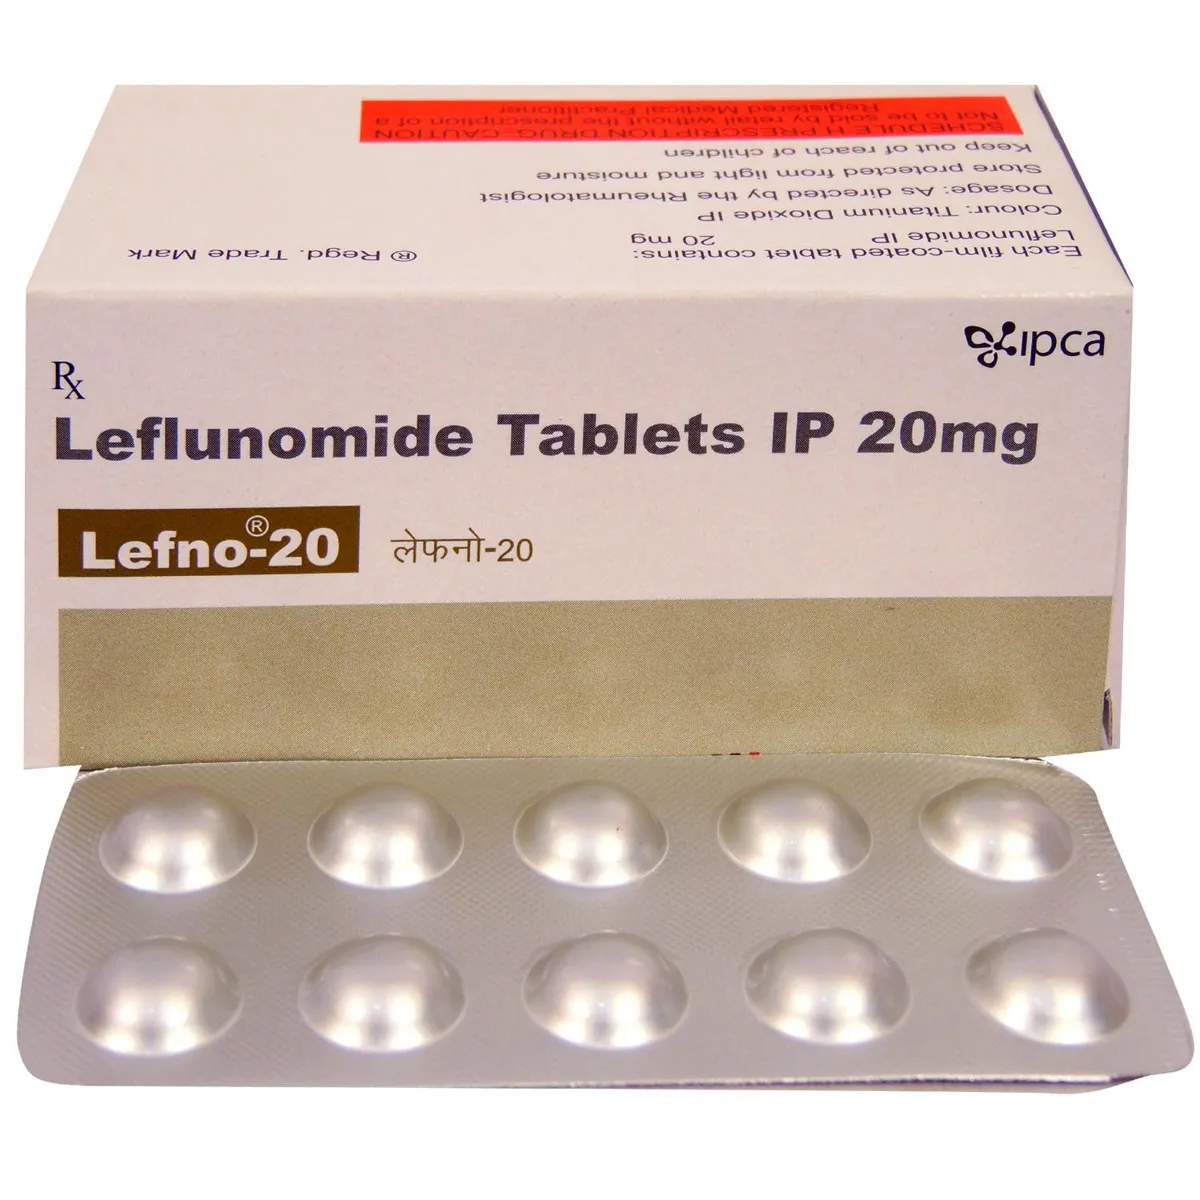 lefno-20-tablet